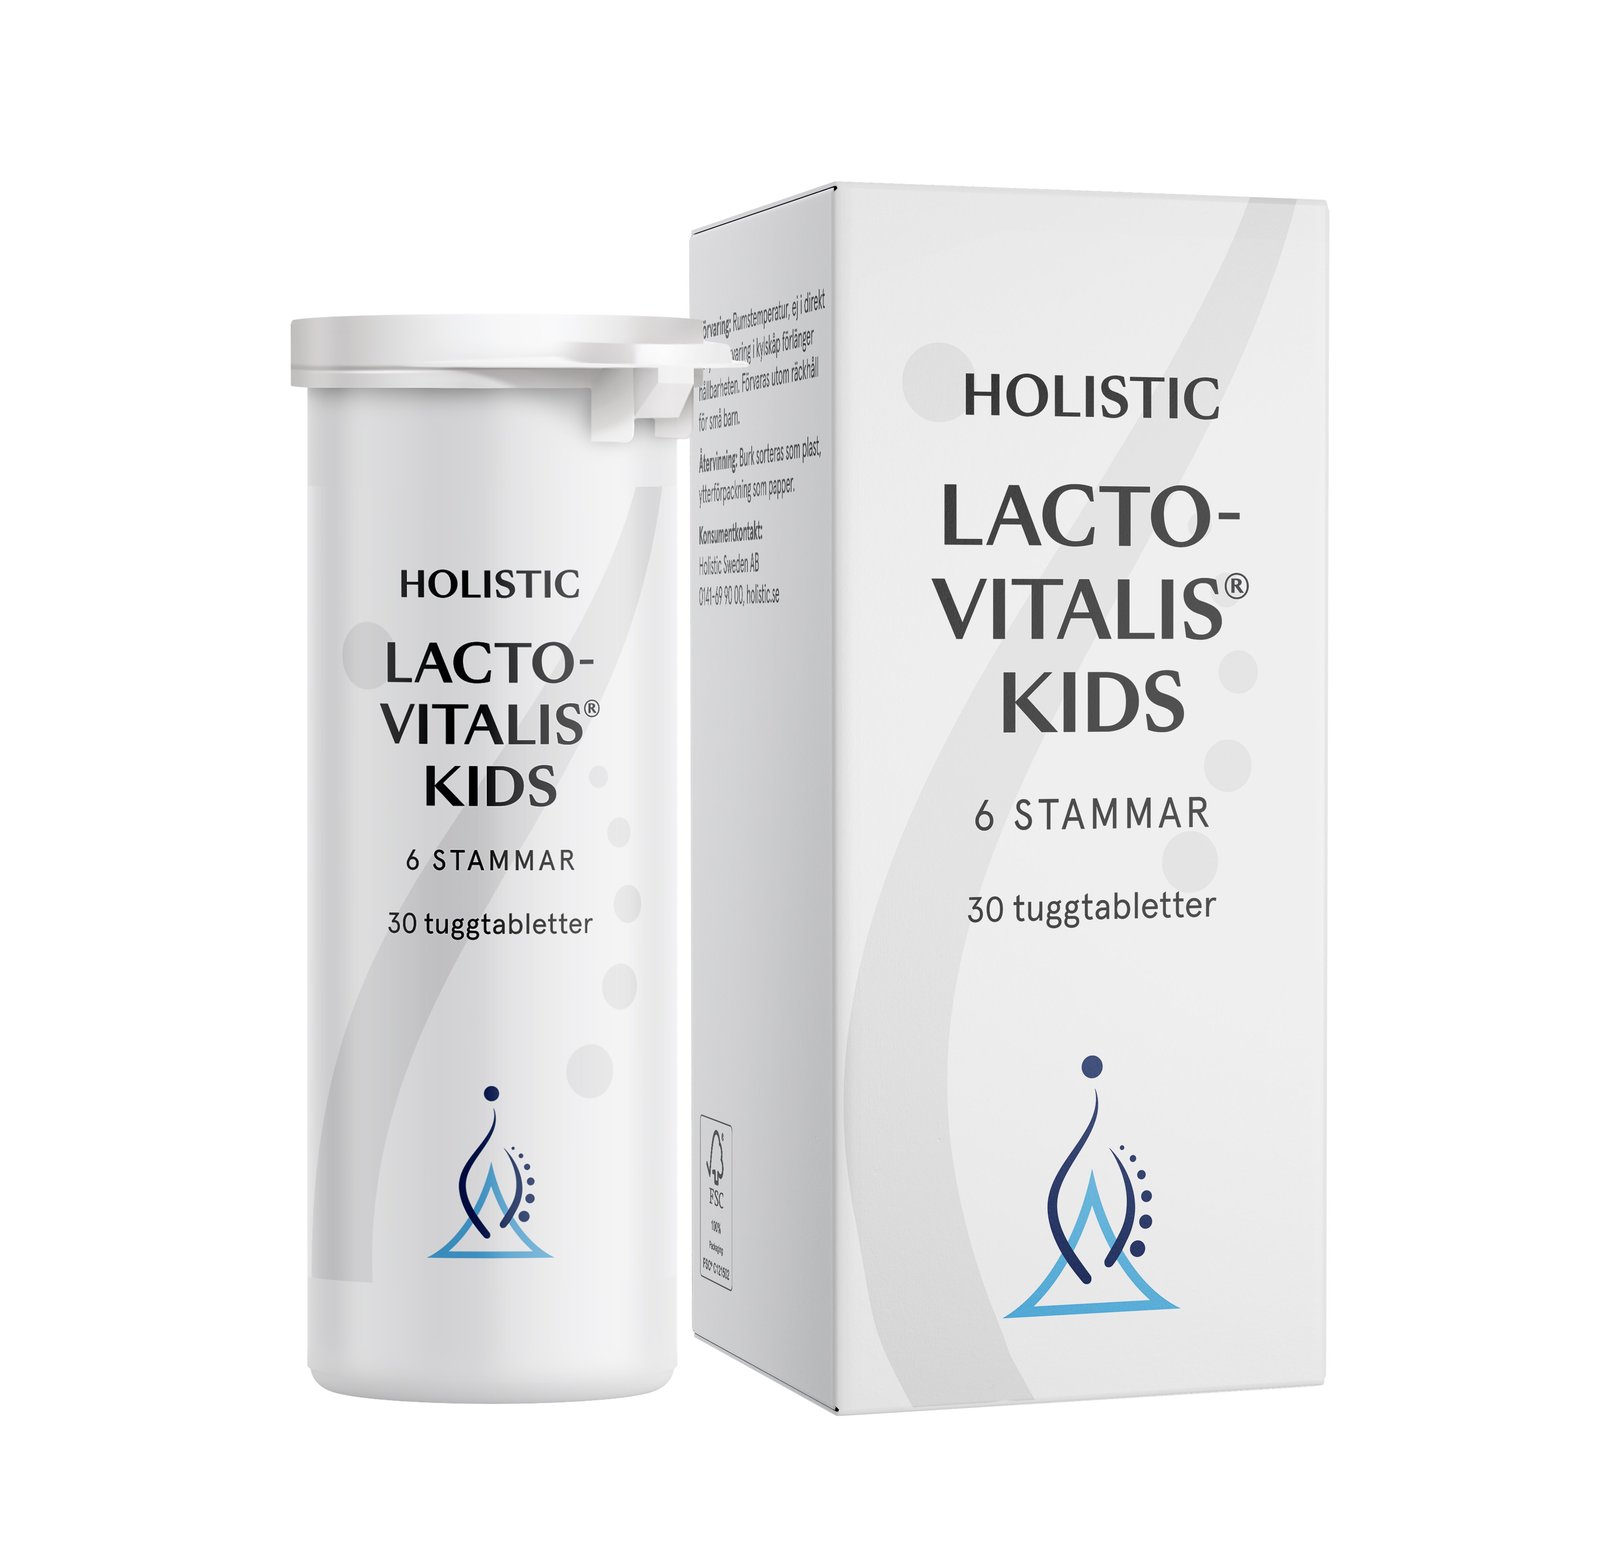 Holistic Lactovitalis® Kids 30 tuggtabletter